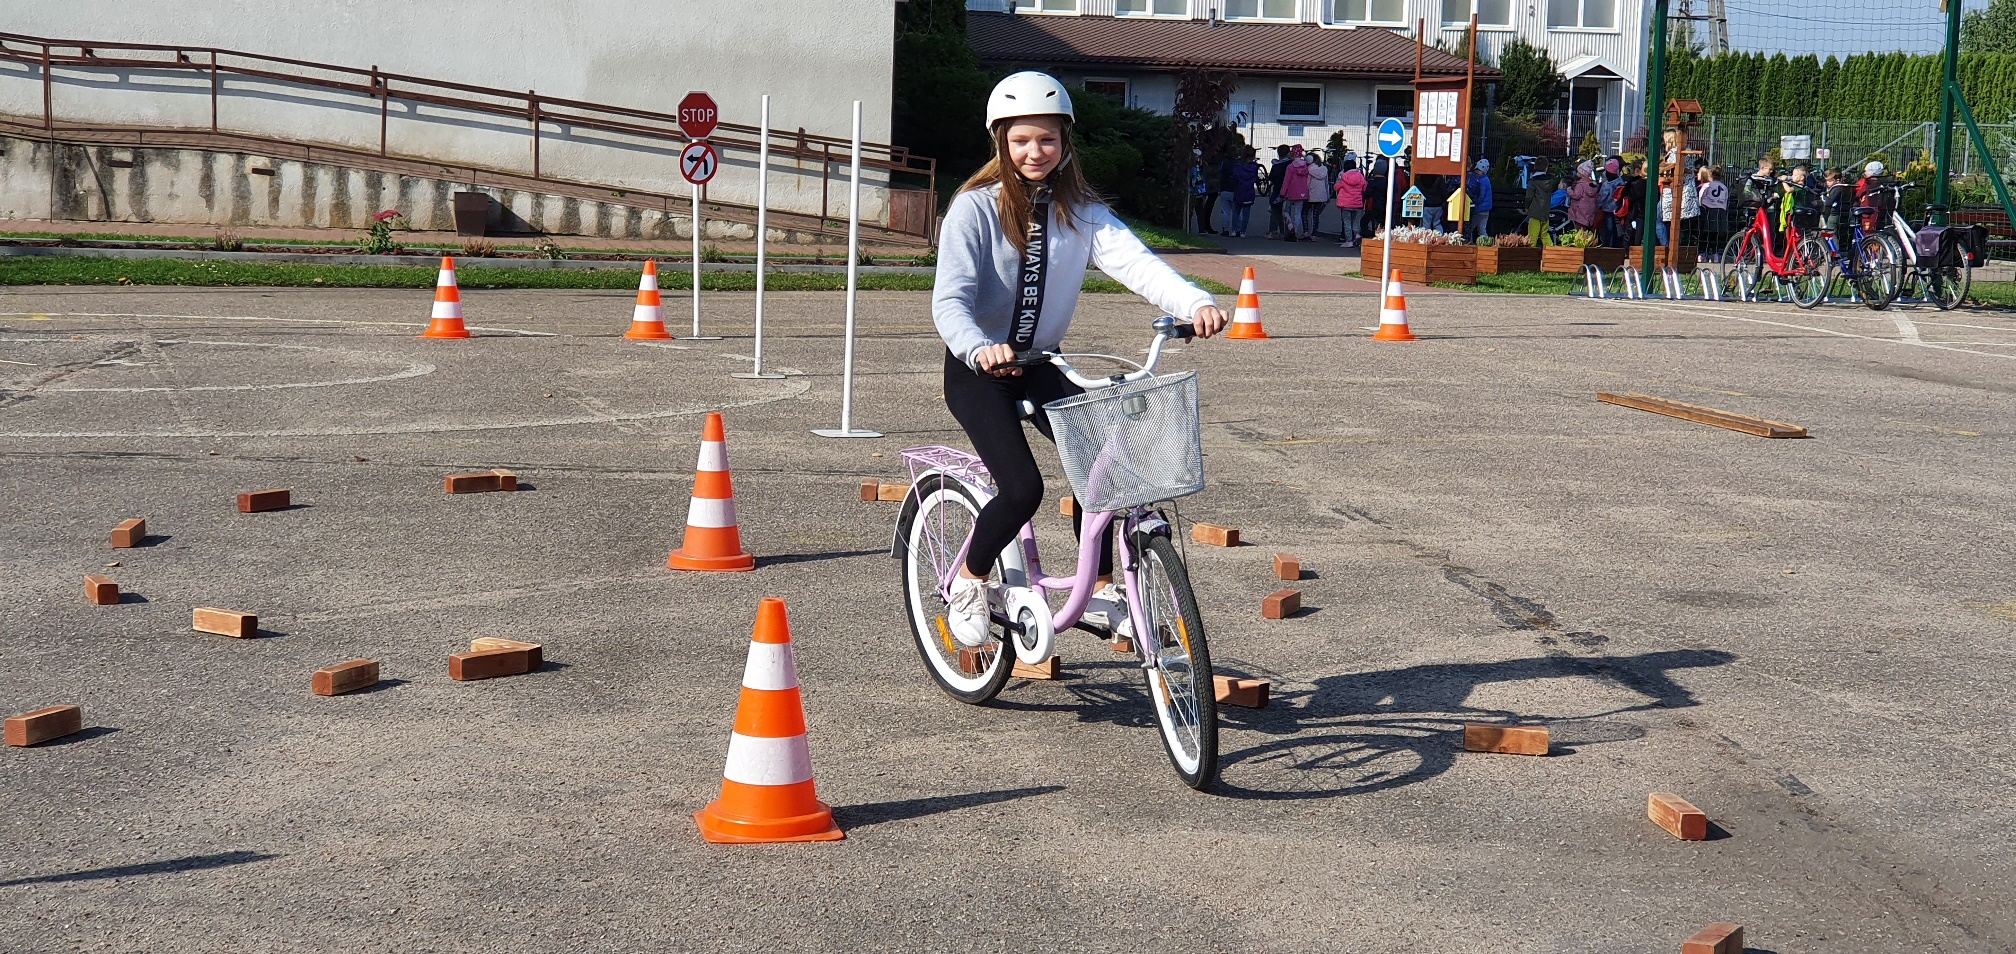 Dziewczynka w białym kasku jedzie rowerem po placu, gdzie trasę jazdy wyznaczają cegły i pachołki